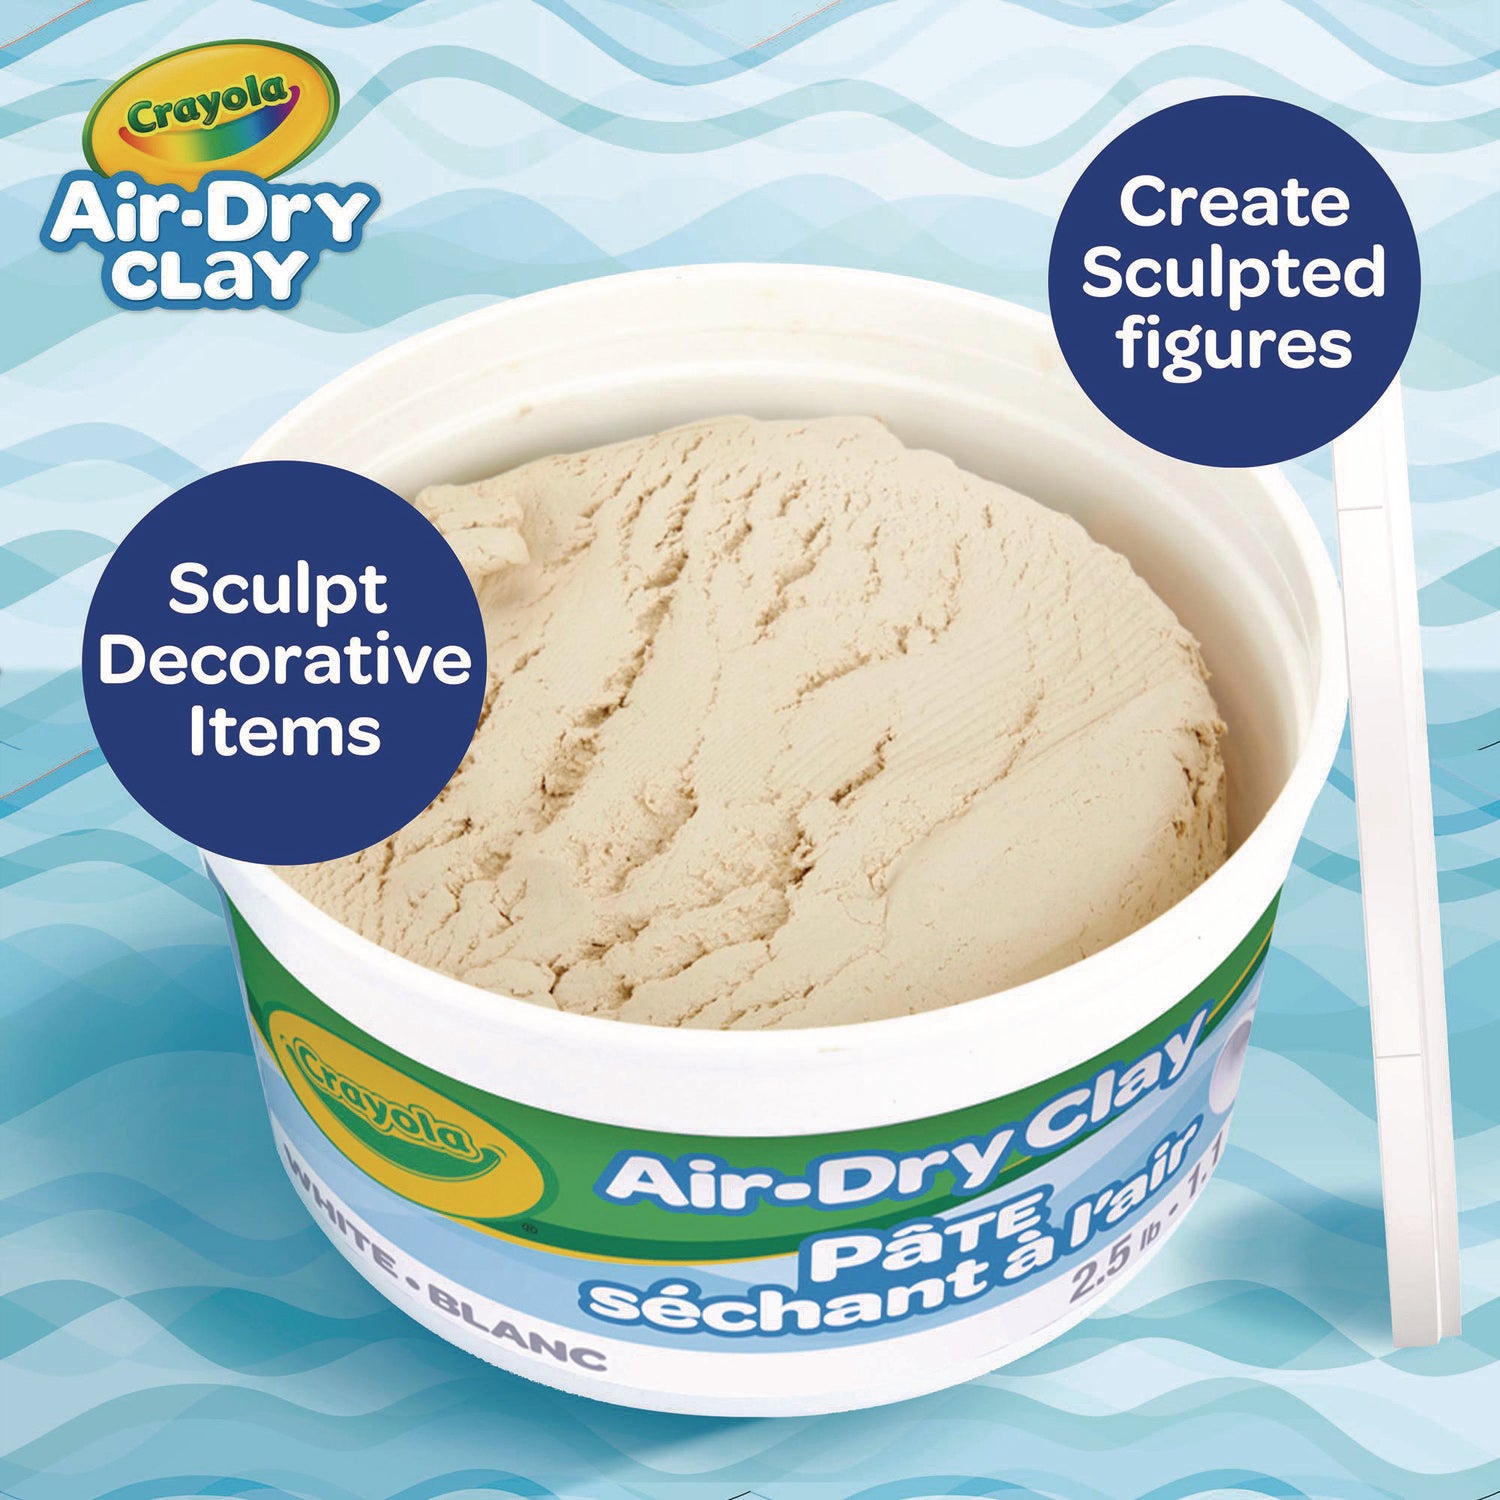 Air-Dry Clay,White, 2.5 lbs - 2